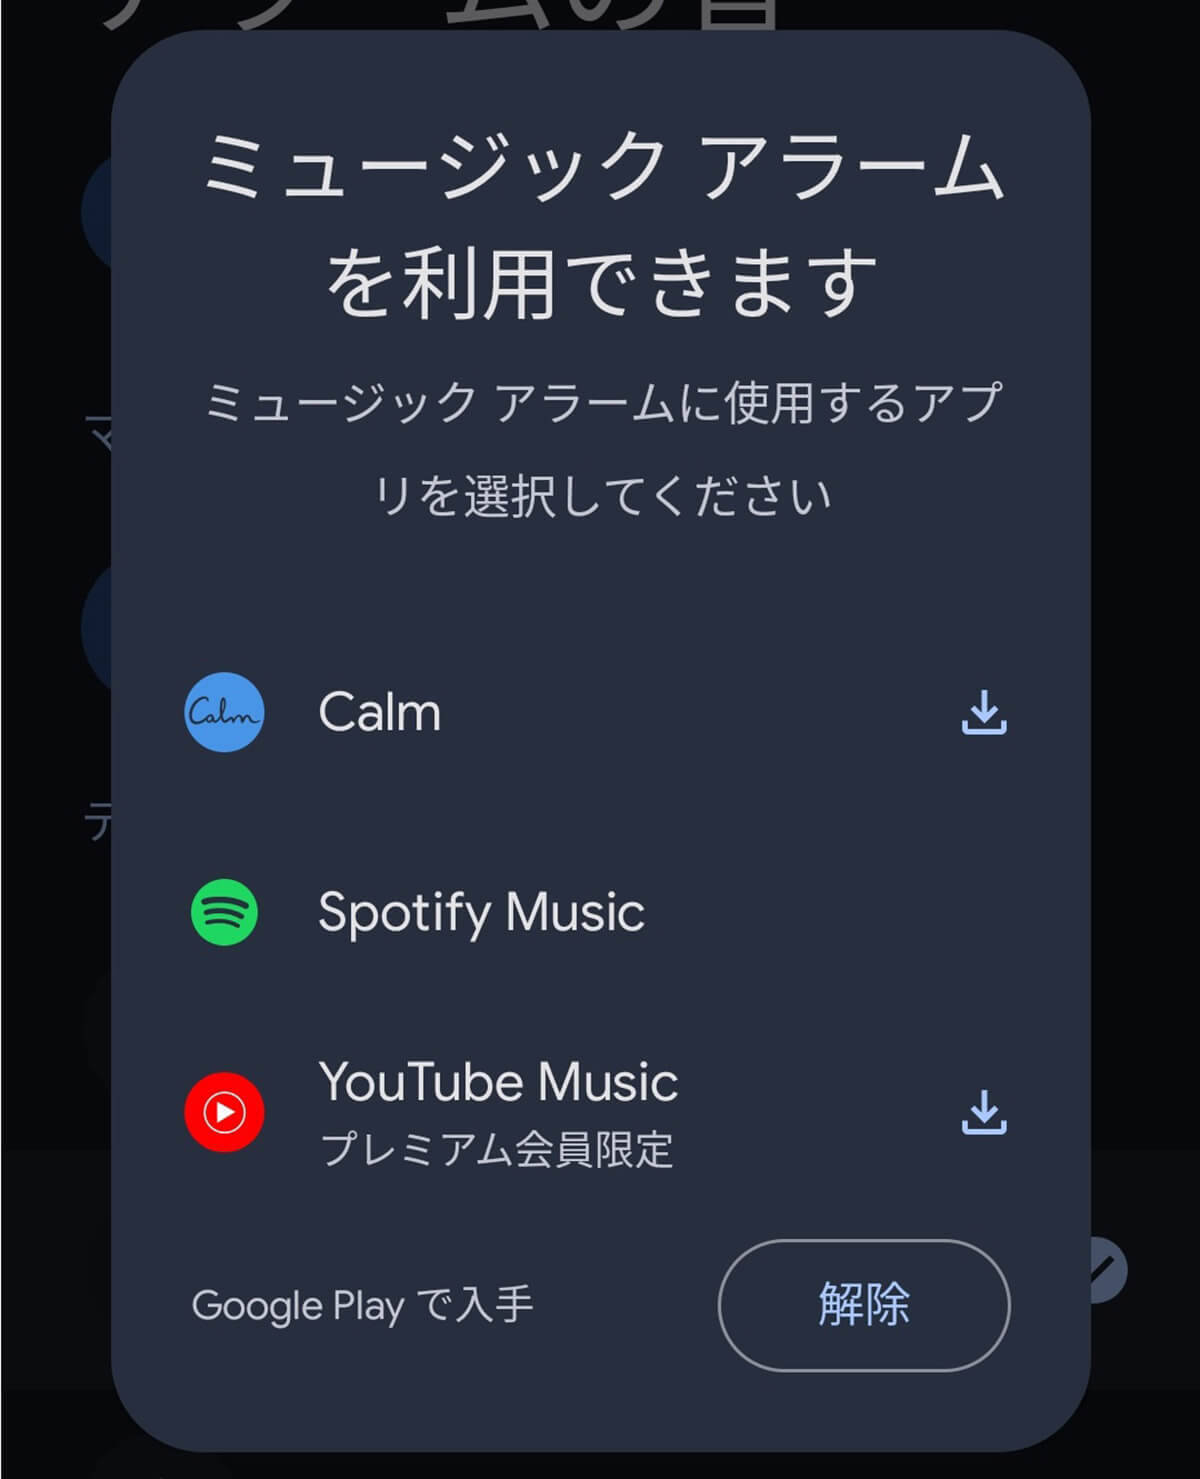 Androidスマホの「アラーム音」を好きな曲に変更する方法